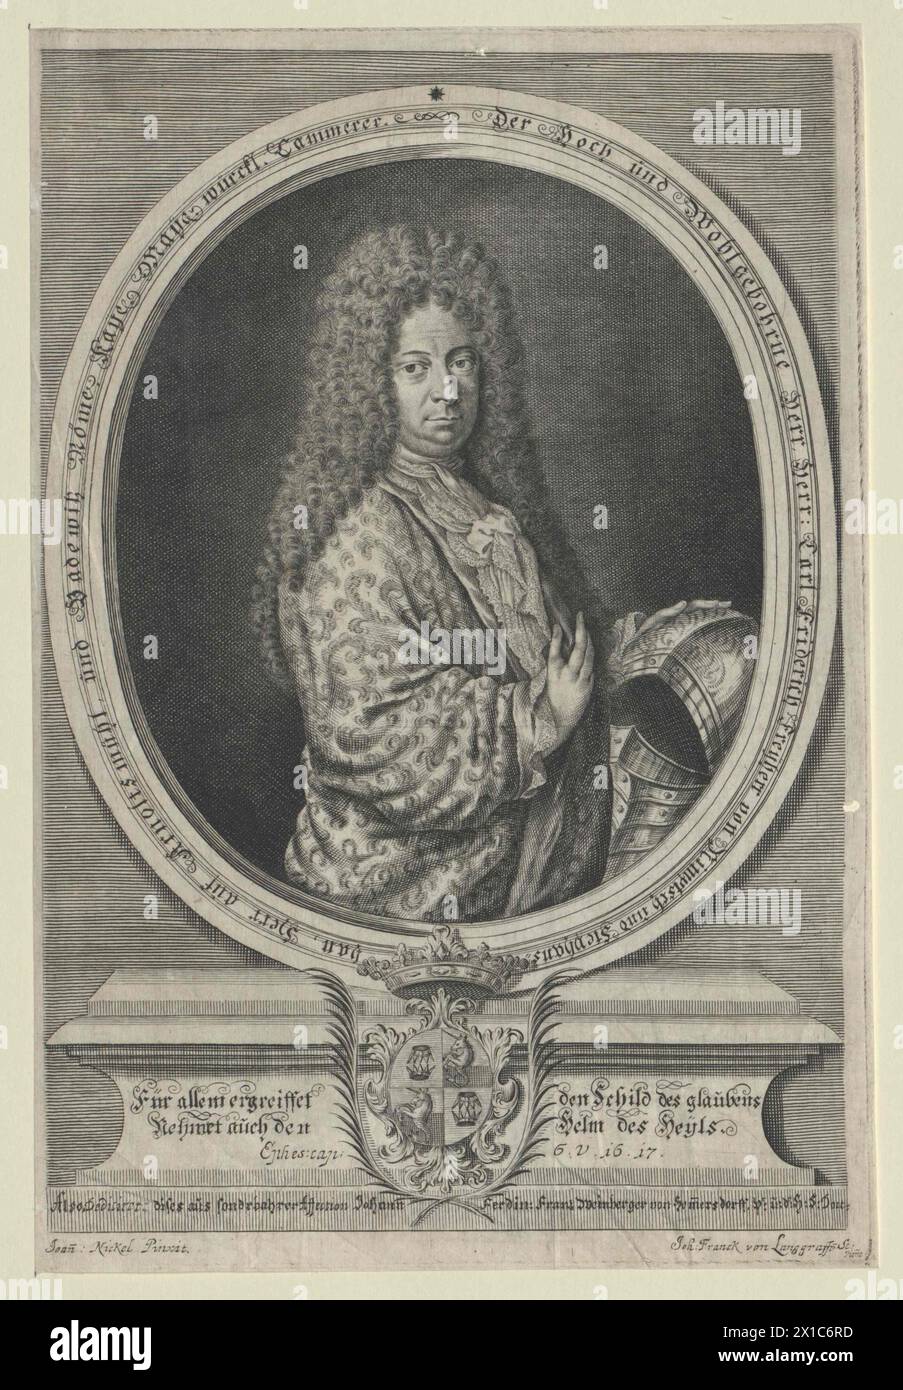 Nimptsch, Karl Frederick Baron, vécu vers 1723, - 19830422 PD51467 - Rechteinfo : droits gérés (RM) Banque D'Images